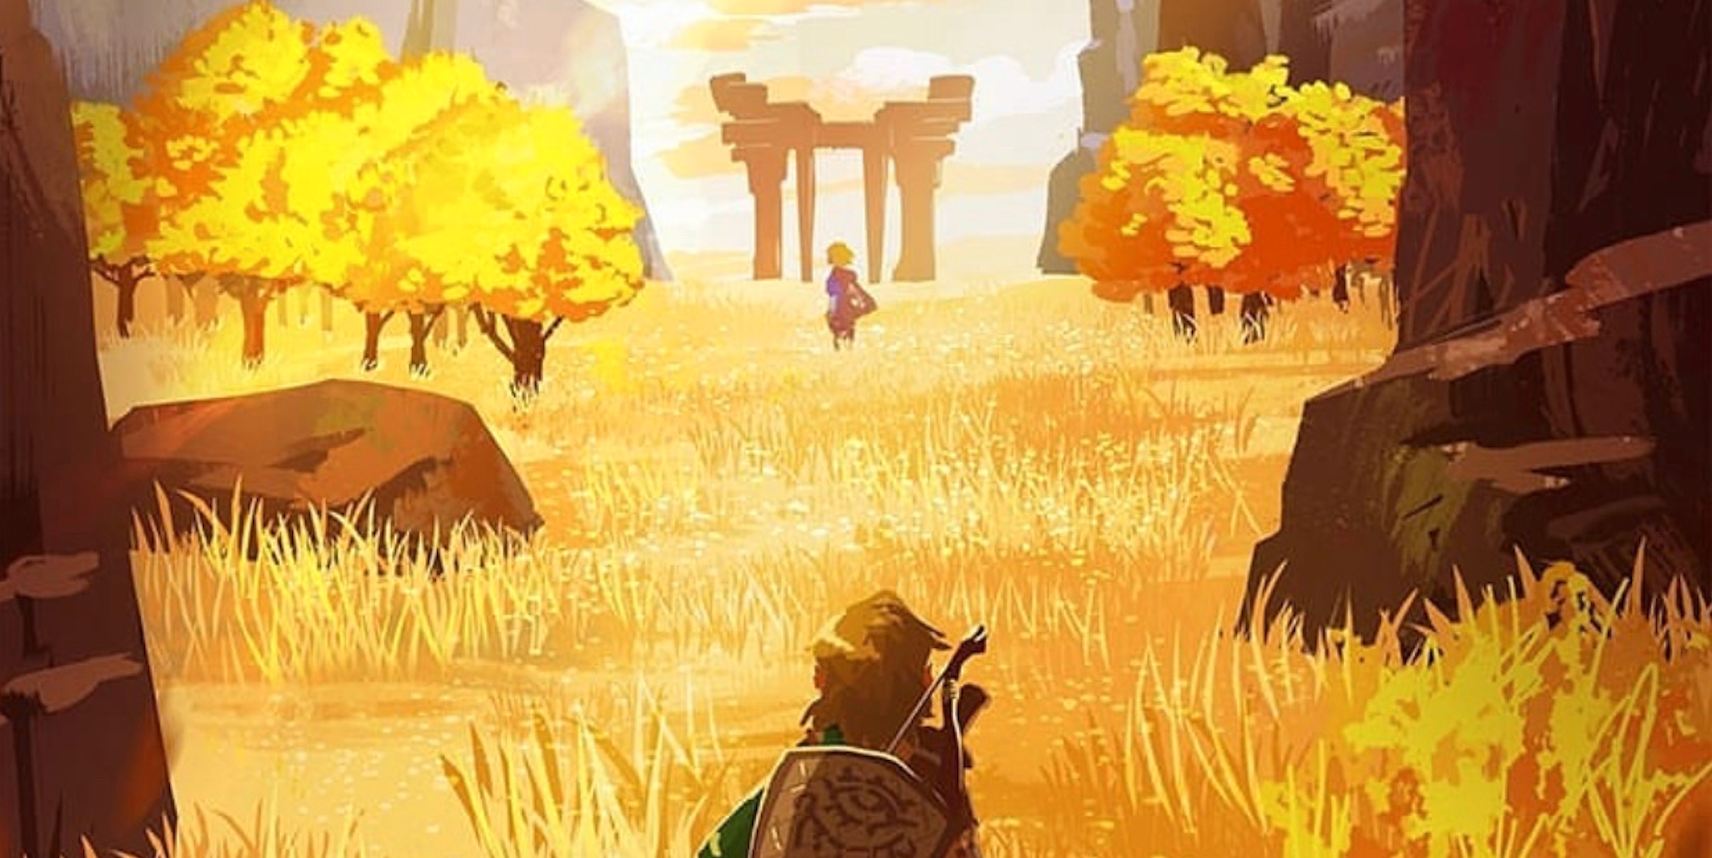 El arte de Zelda: Breath of the Wild 2 captura el misterio del nuevo Hyrule